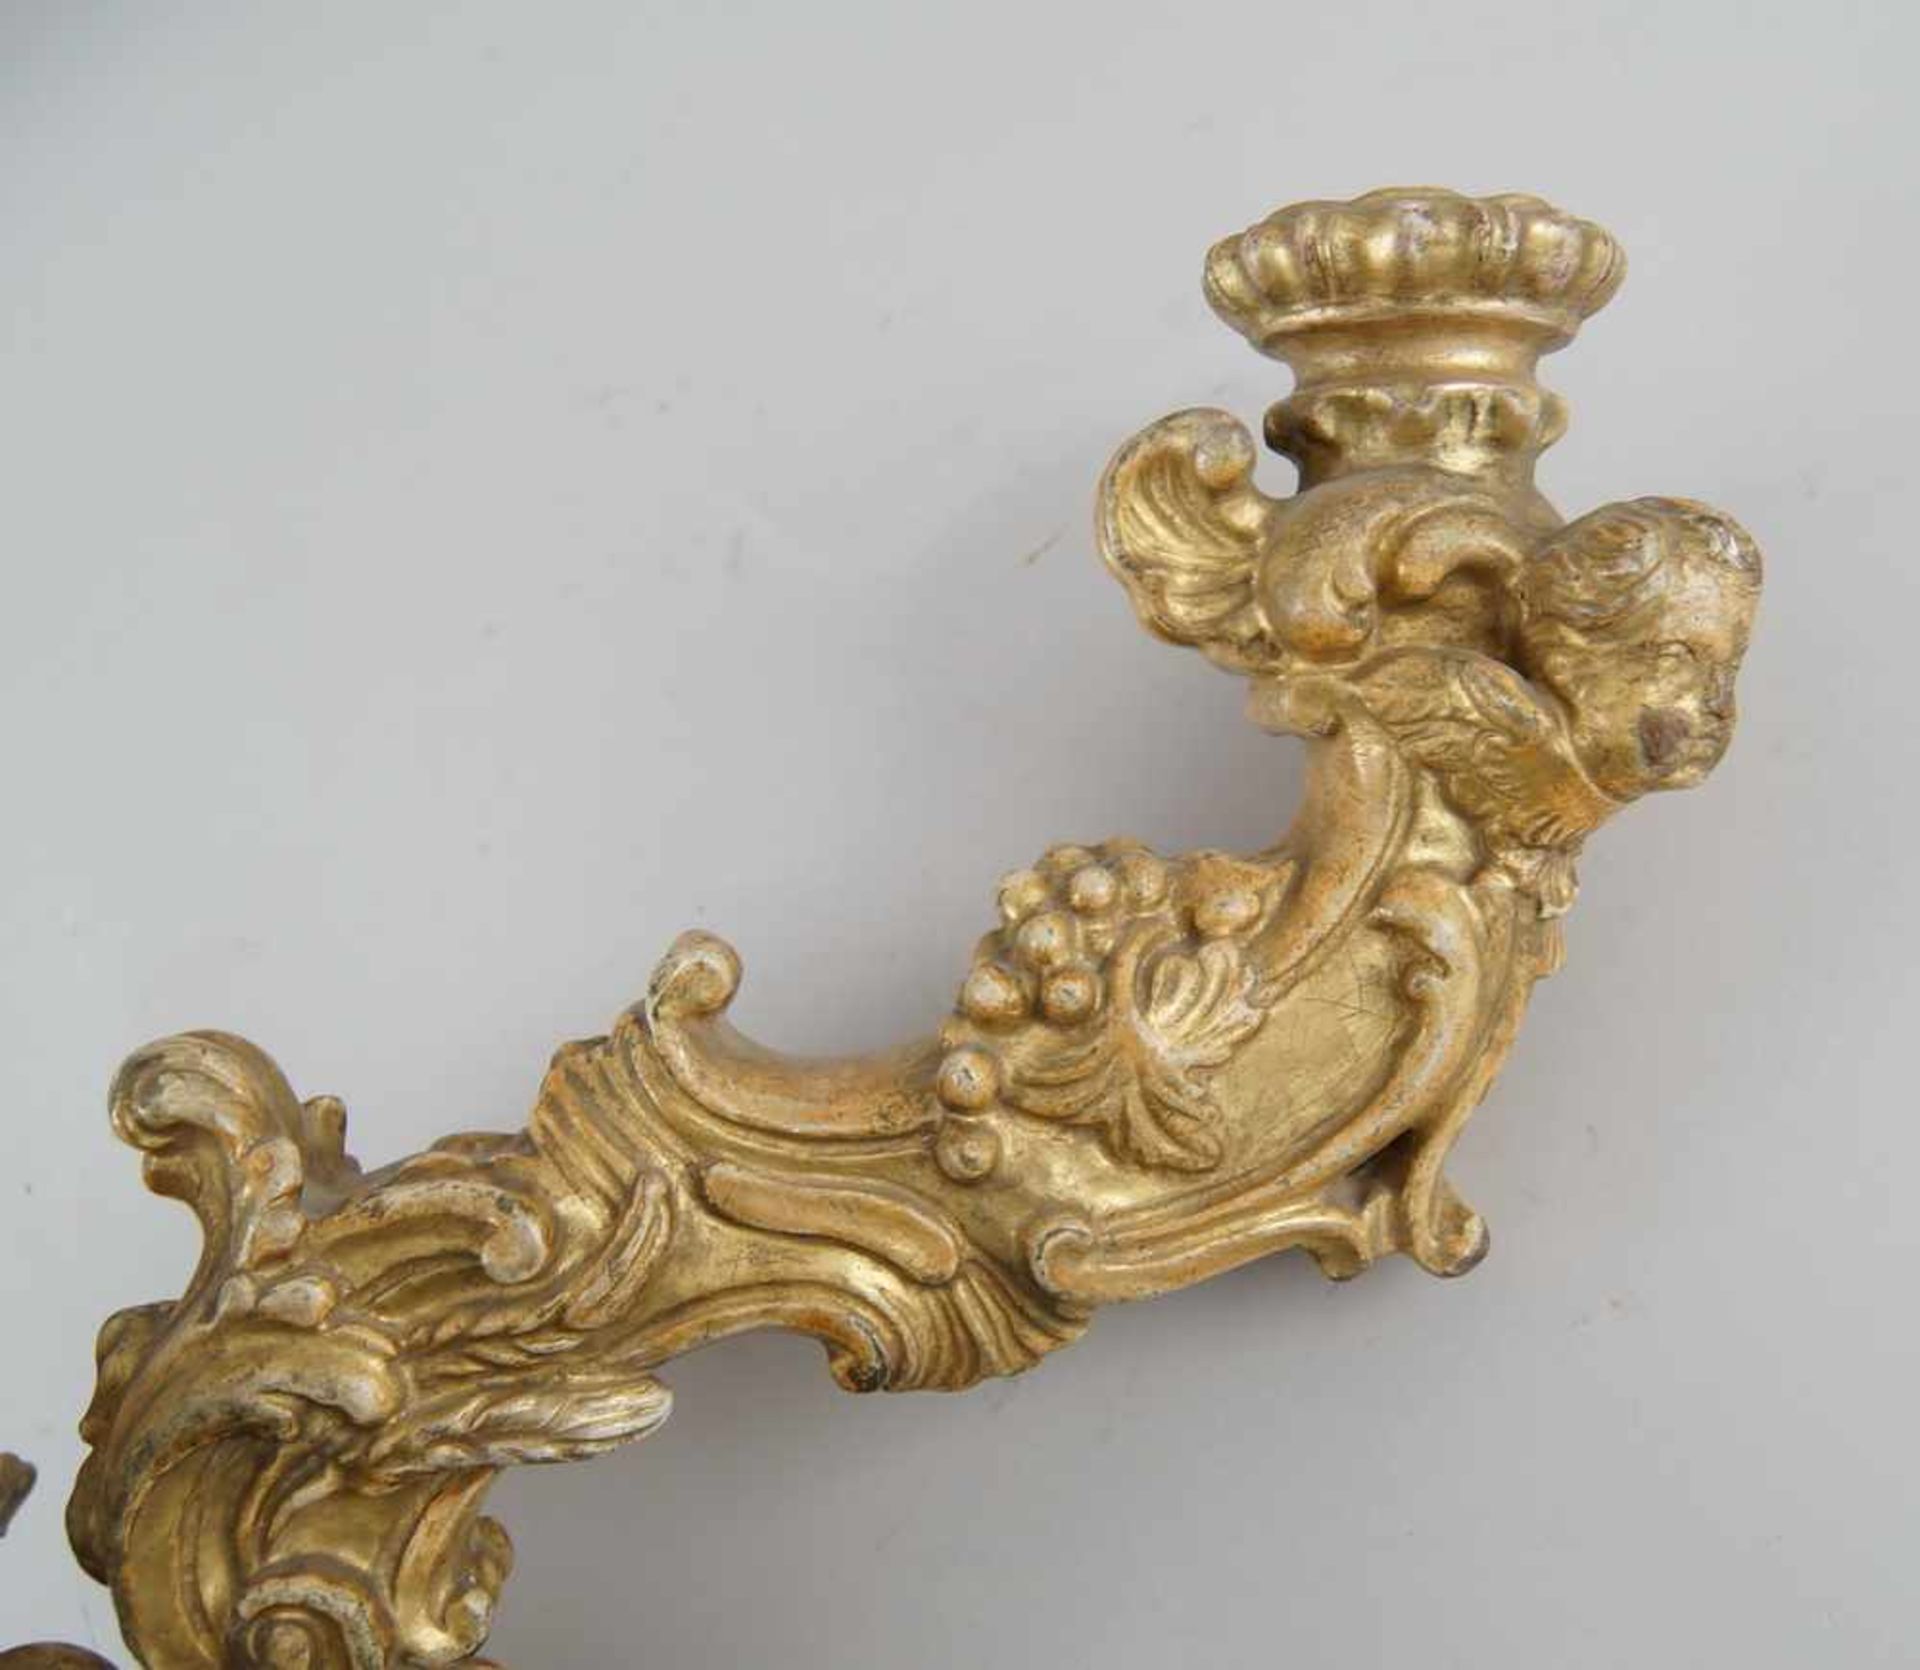 Prunkvoll geschnitzter Wandkerzenleuchter, vergoldet, 18. JH, Altersspuren, L 36 cm, H 49cm- - -24. - Bild 2 aus 11